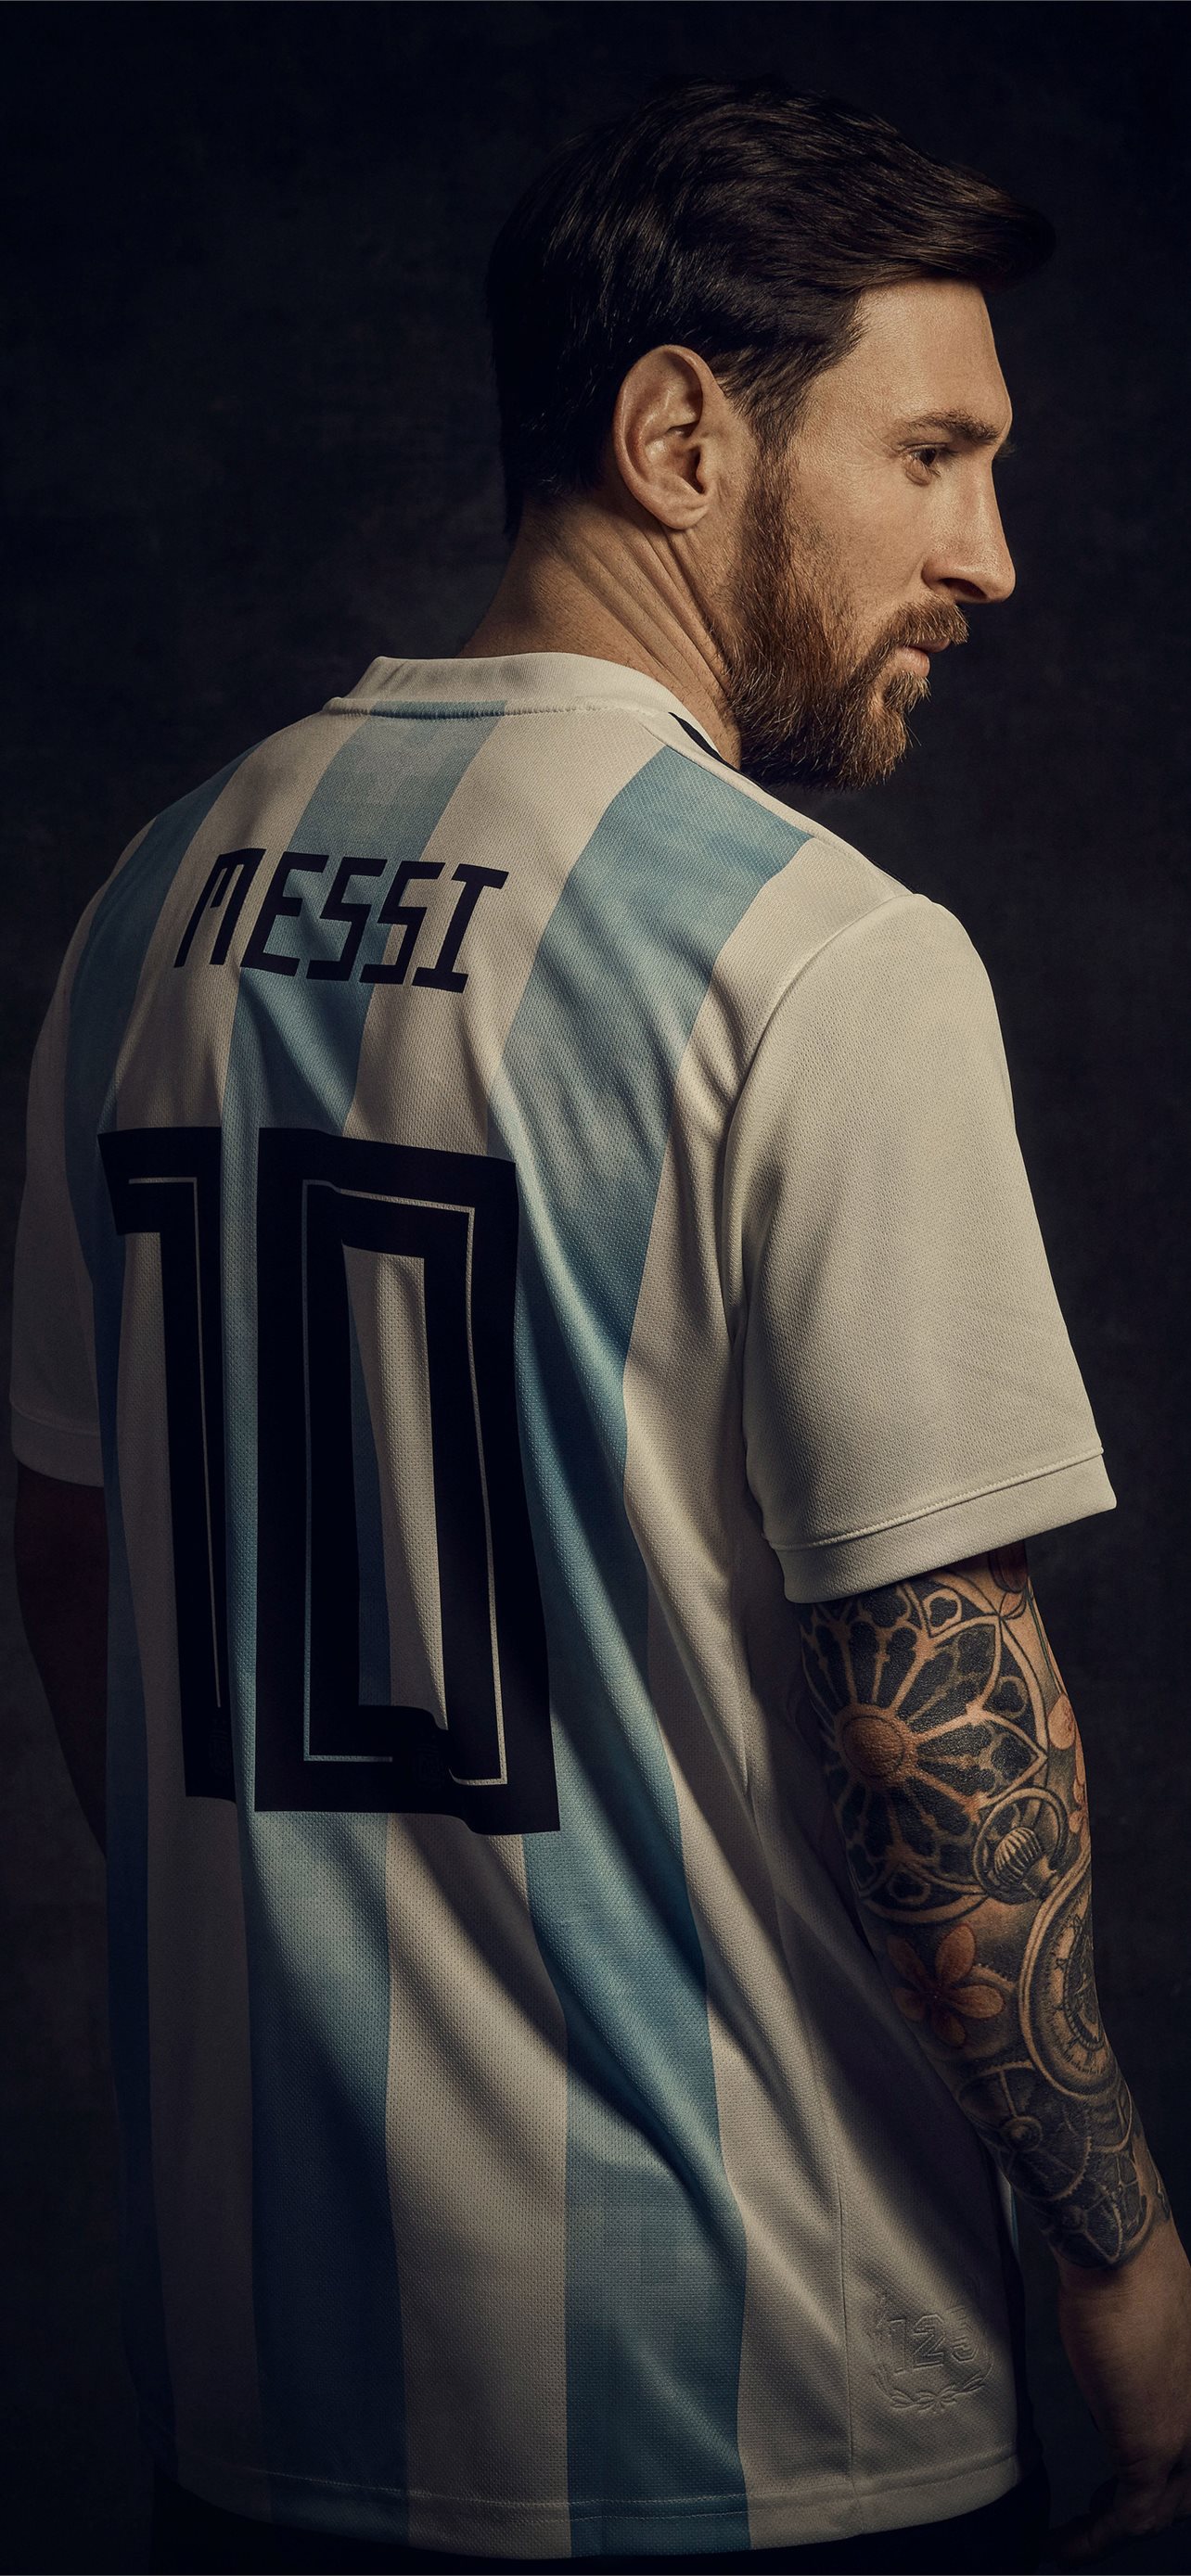 Copa América  Sabías que Leo Messi es el máximo goleador y asisitidor de  la selección argentina Si con un total de 70 goles y 41 asistencias en  138 partidos disputados   